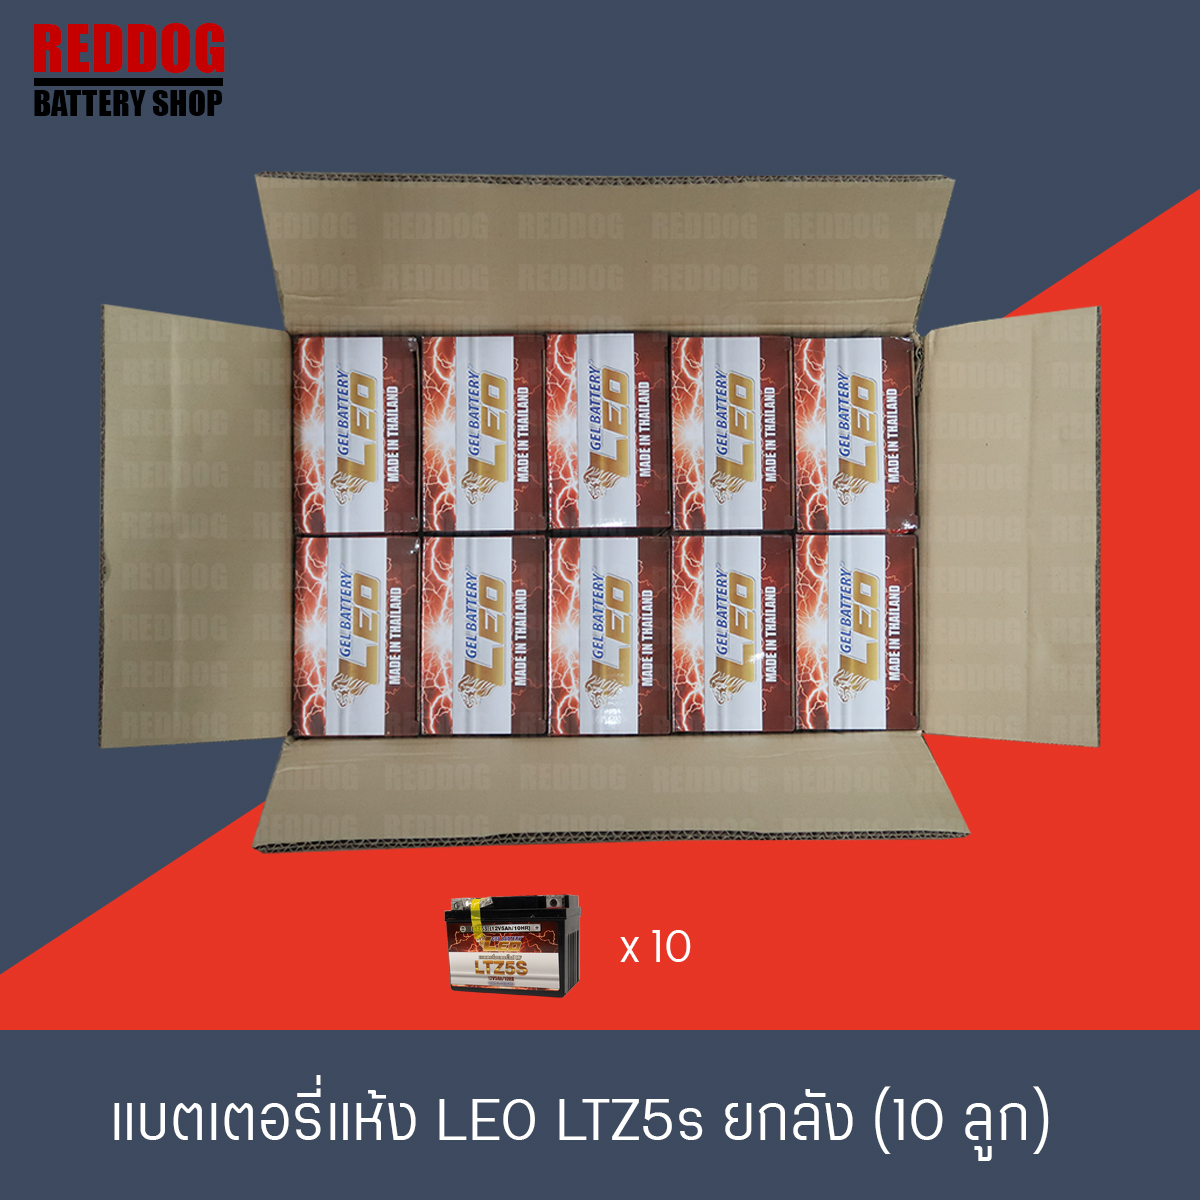 แบตเตอรี่ LEO LTZ5s ยกลัง (10ลูก) ผลิต 7/2021